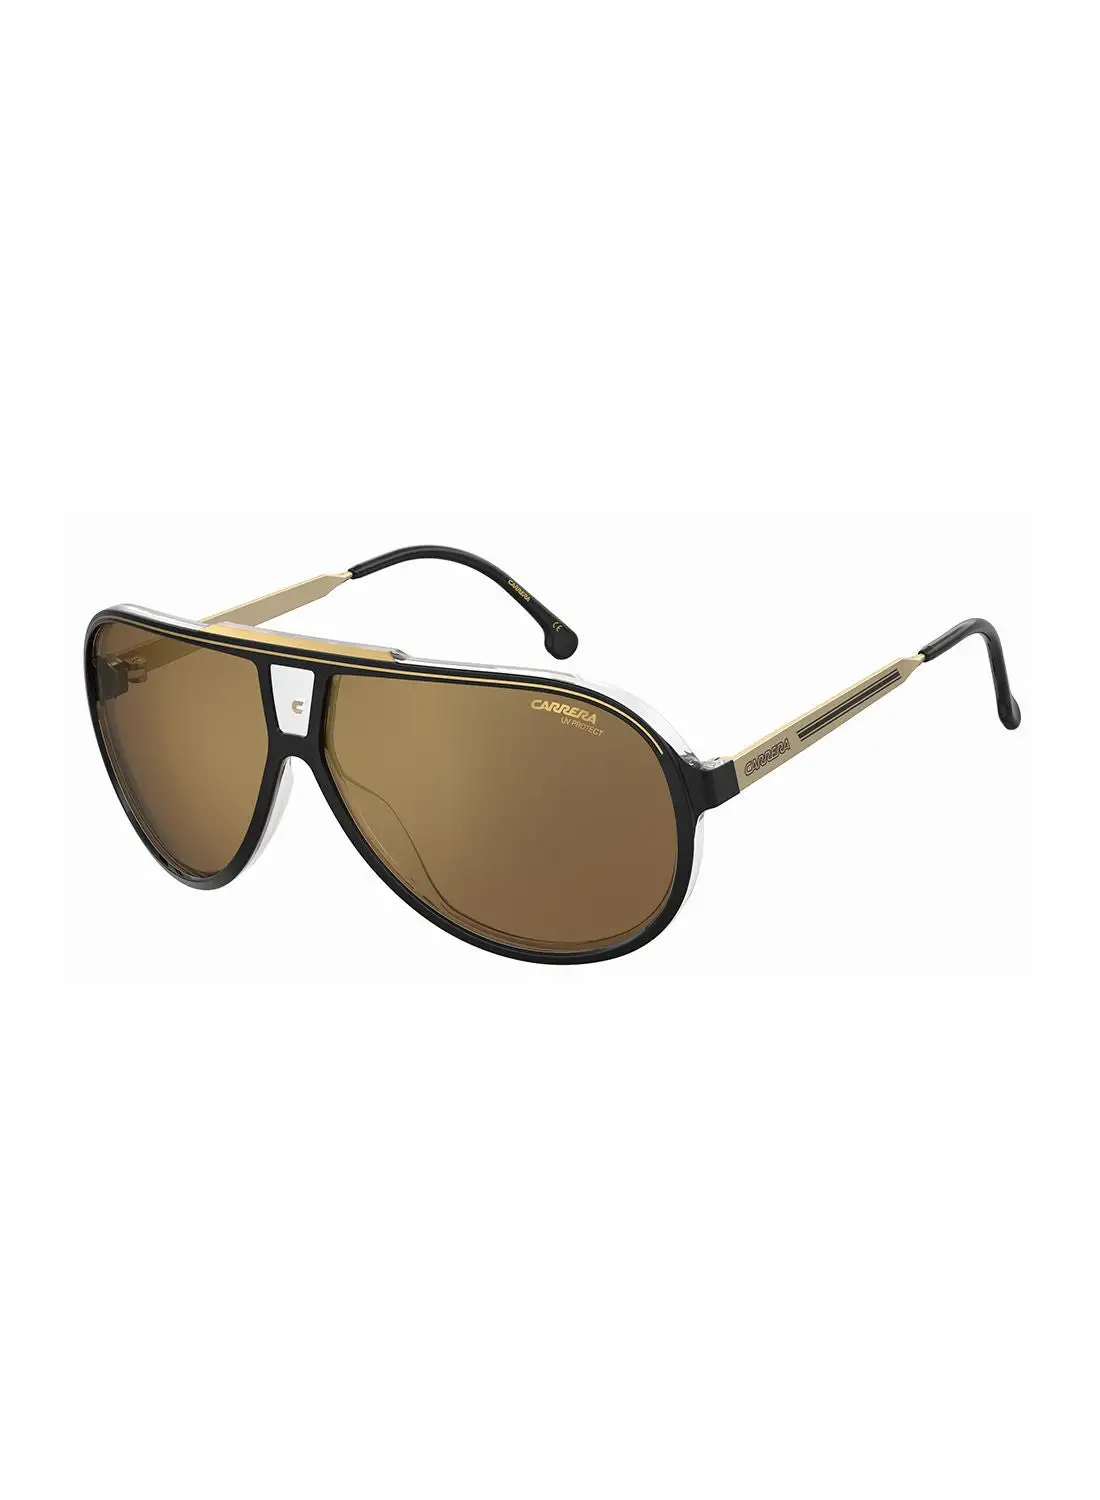 Carrera Men's UV Protection Pilot Sunglasses - Carrera 1050/S Blk Gold 63 - Lens Size: 63 Mm